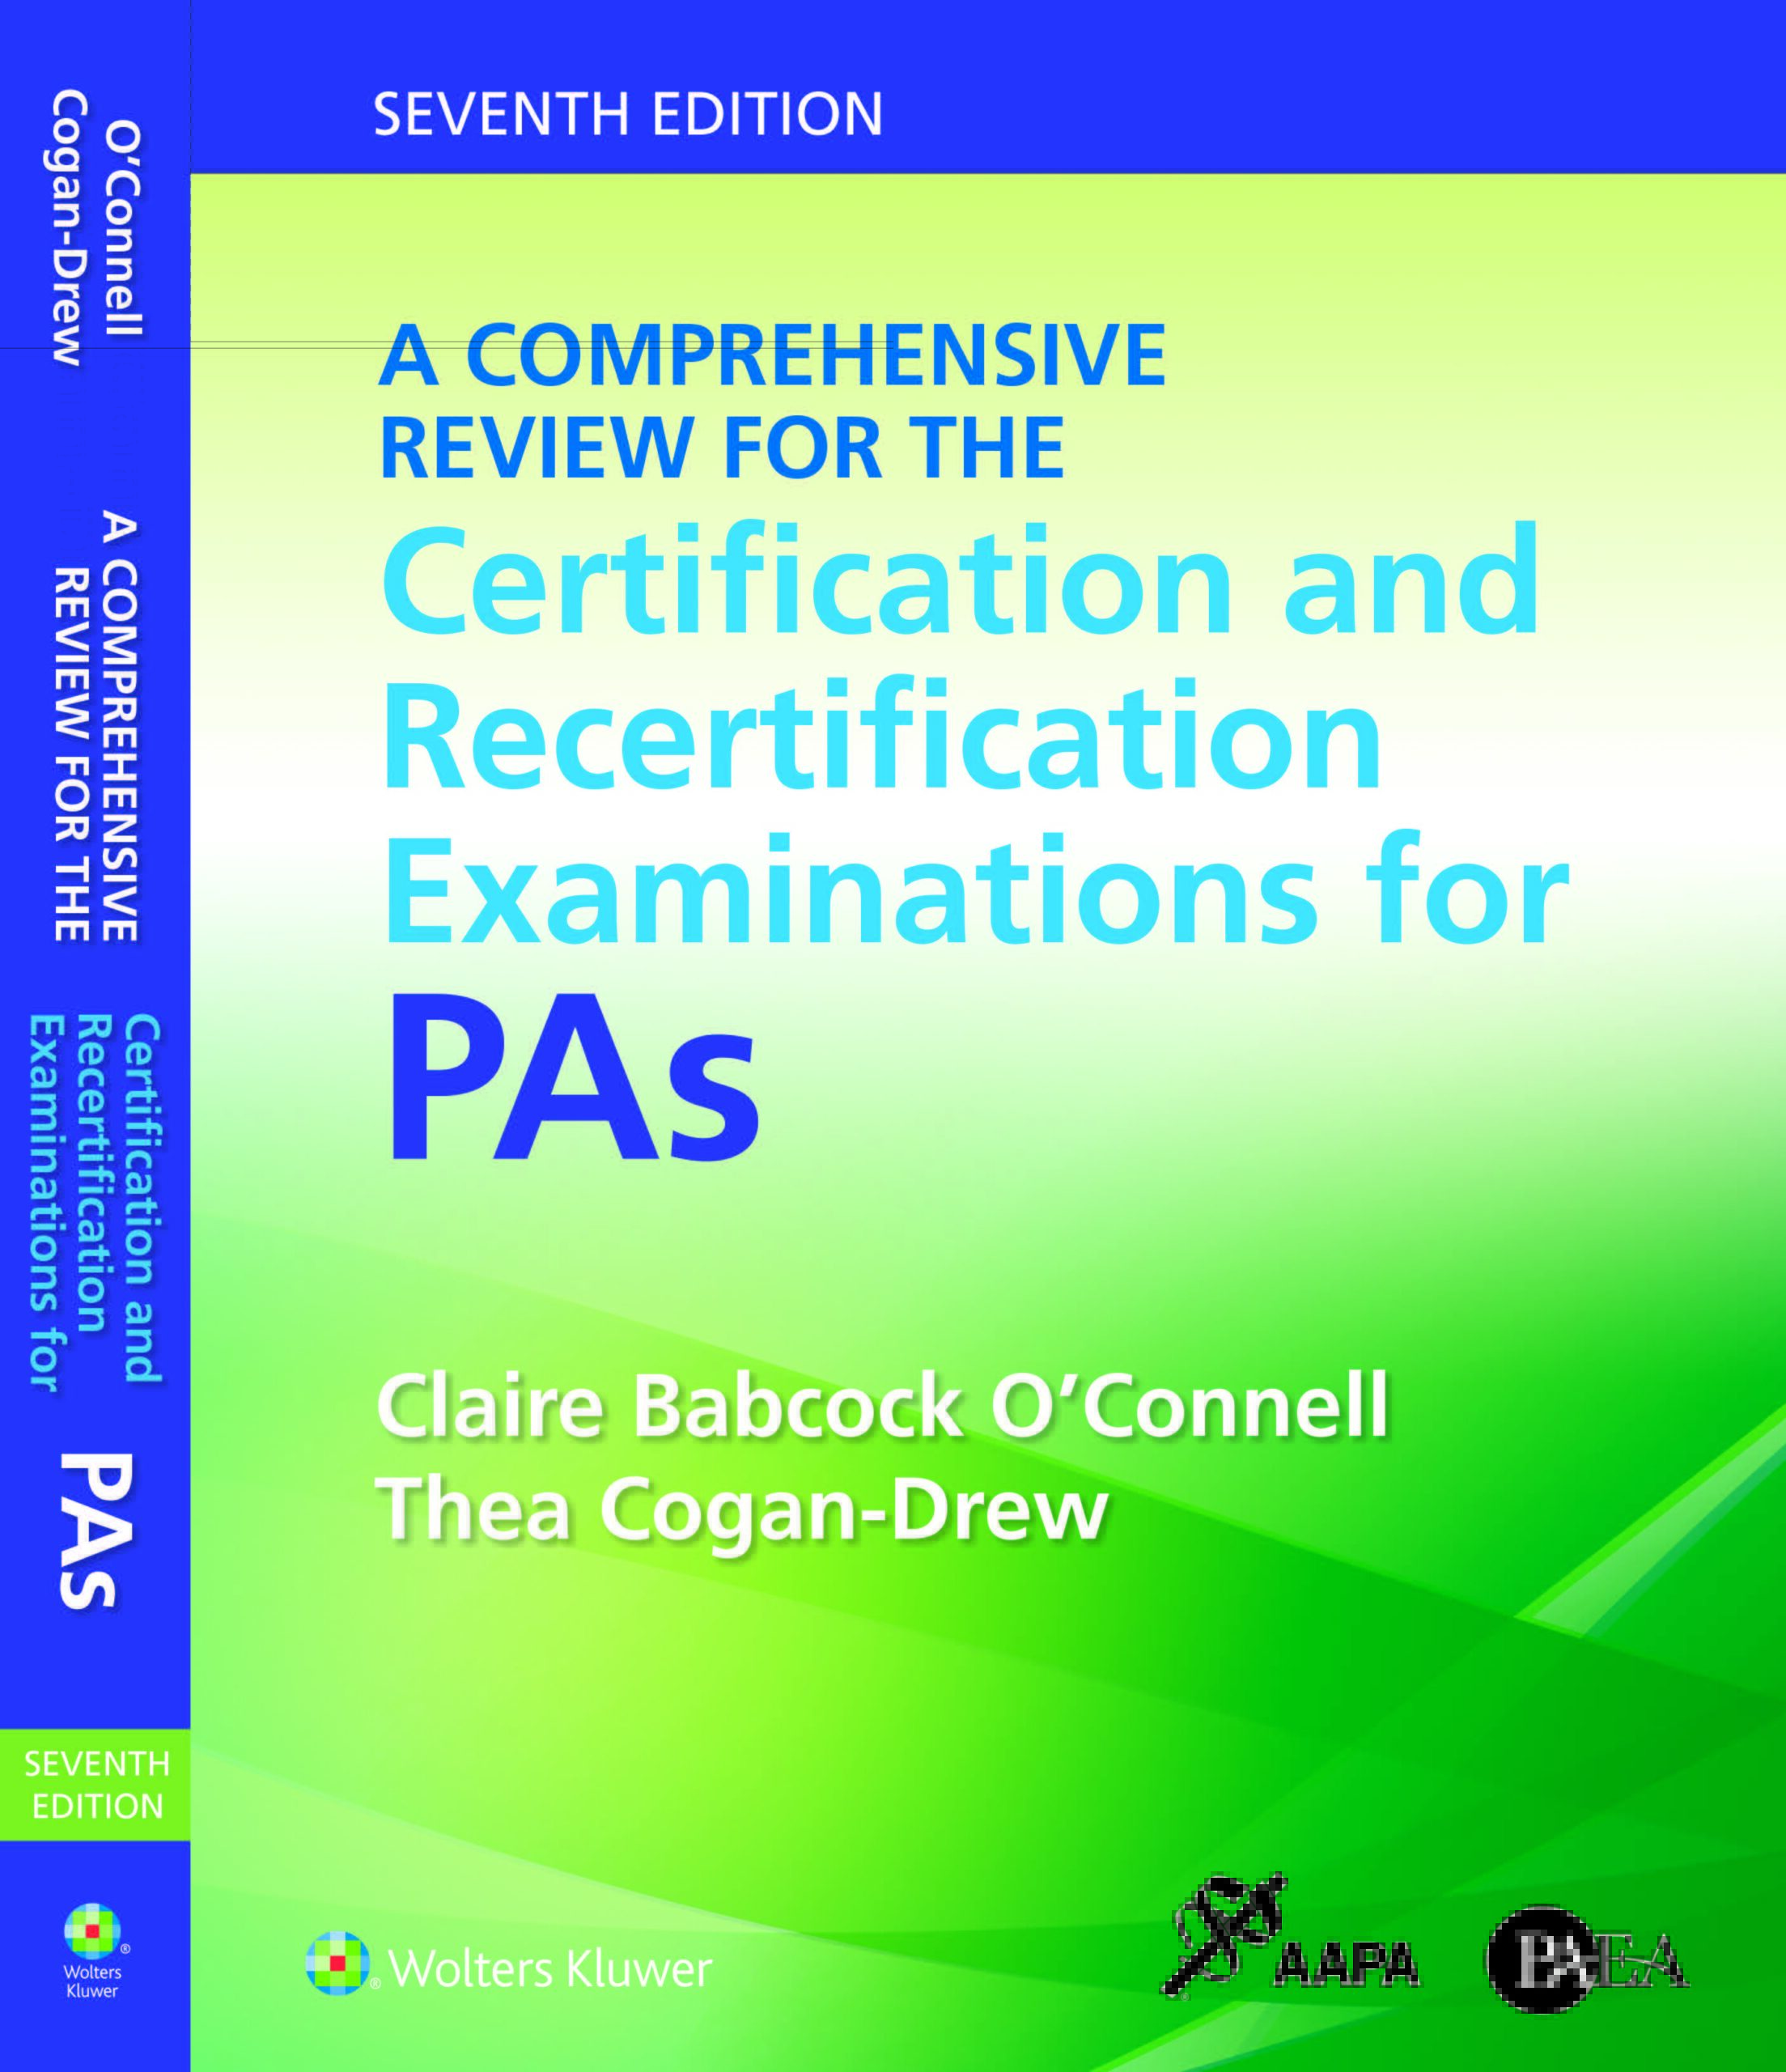 Una revisión integral de los exámenes de certificación y recertificación para asistentes médicos